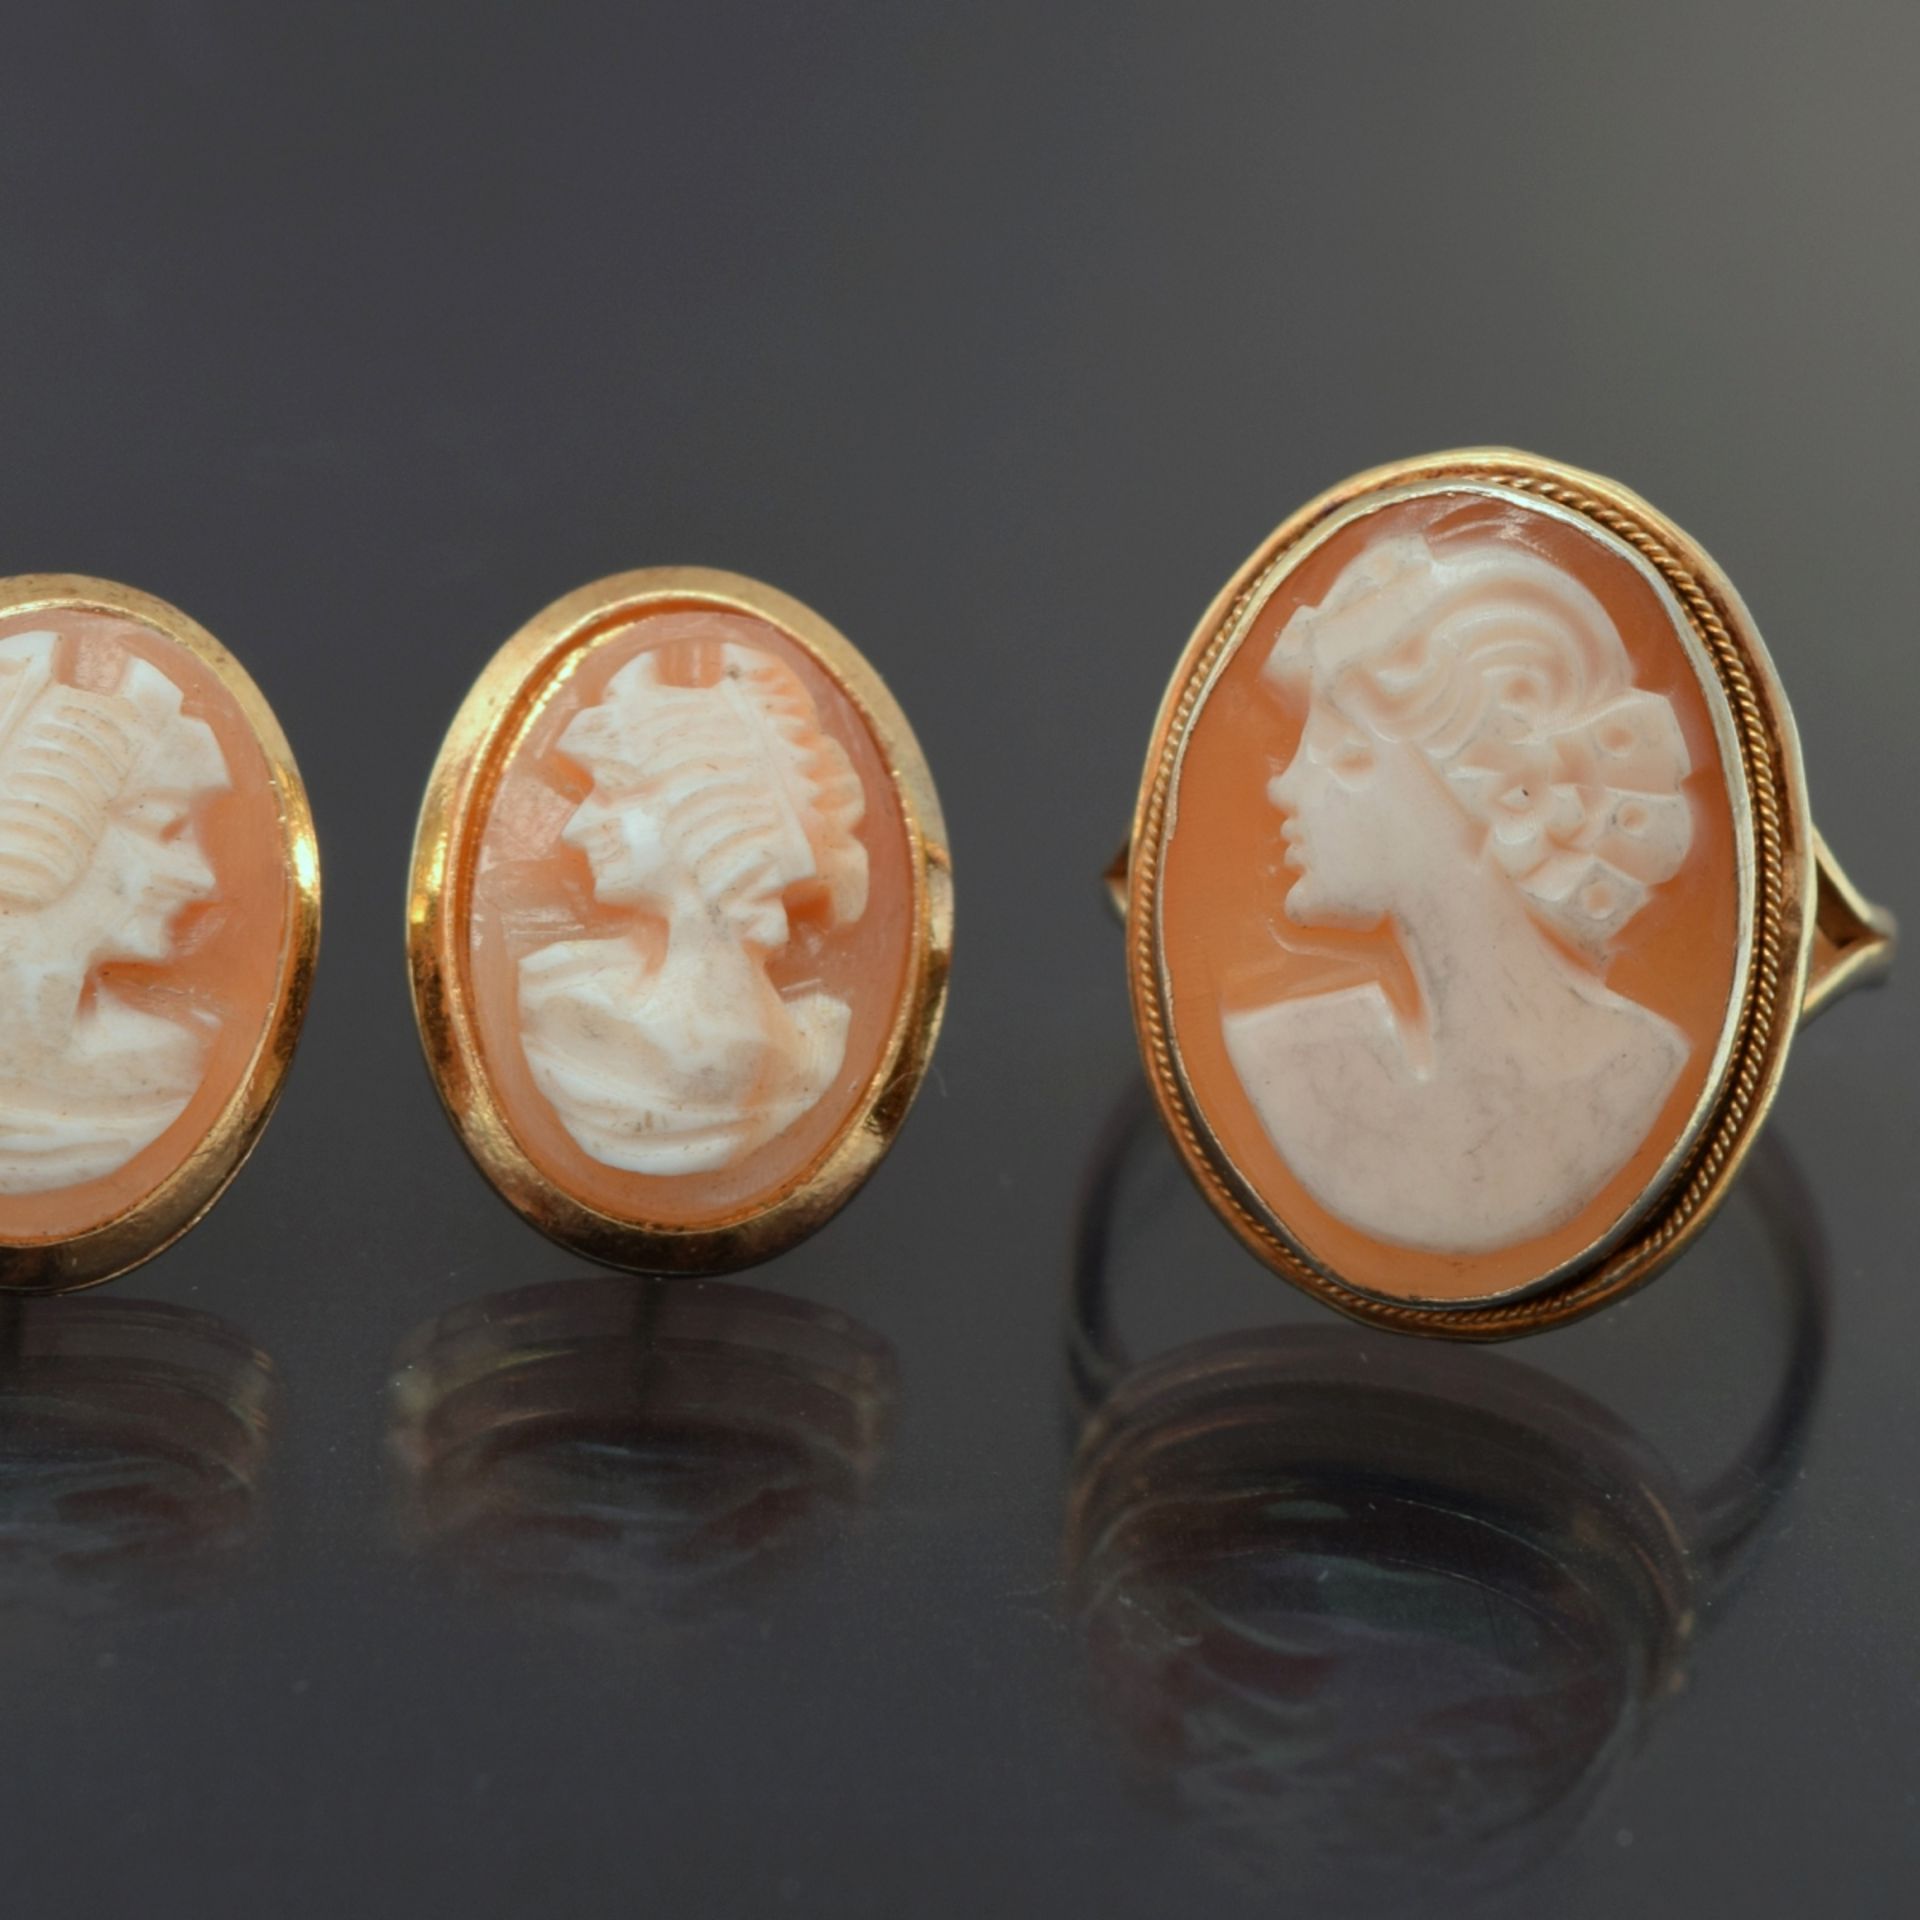 Kameeschmuckset Silber 925, dabei Paar Ohrstecker und Ring, je ovale Muschelkamee mit dem Brustbild